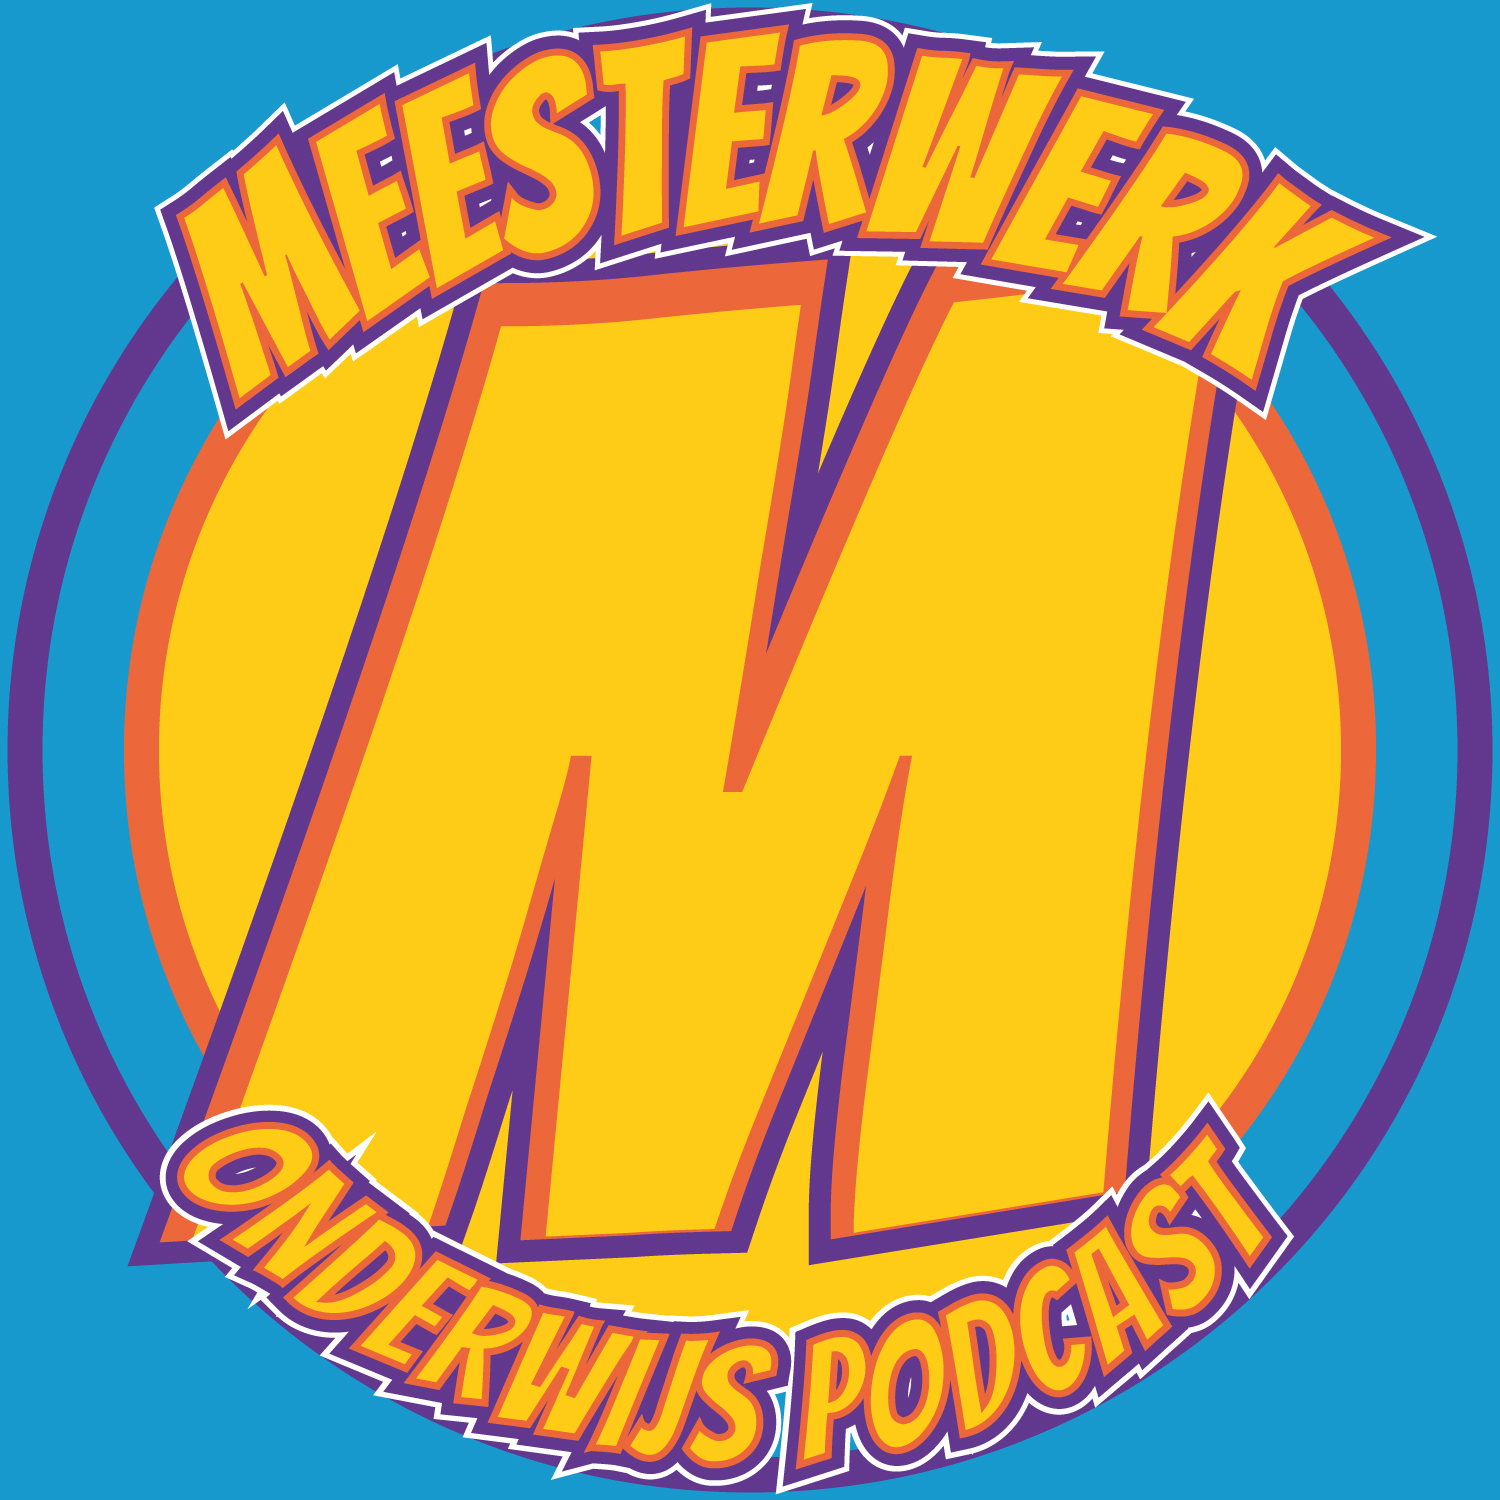 Meesterwerk Podcast logo